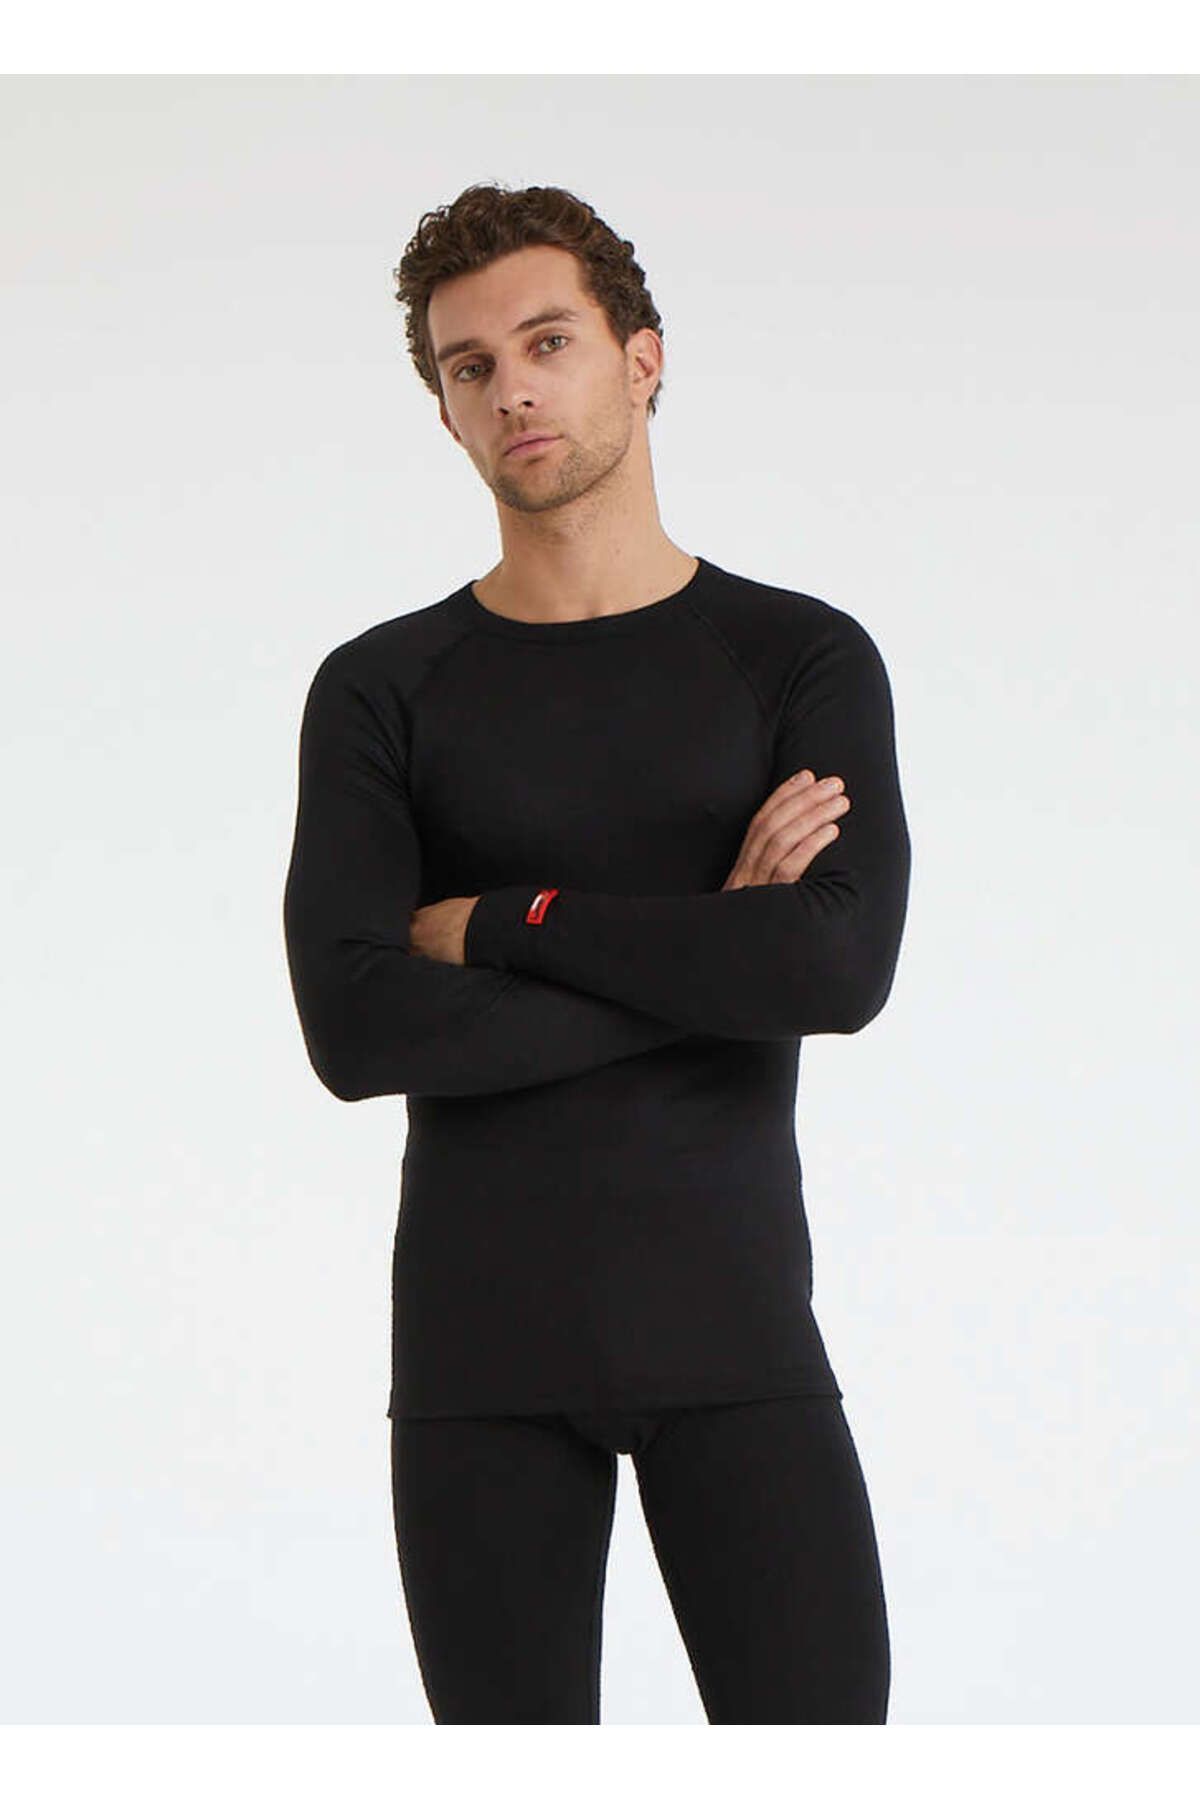 Blackspade Thermal Long Sleeve T Shirt In Stock At UK Tights